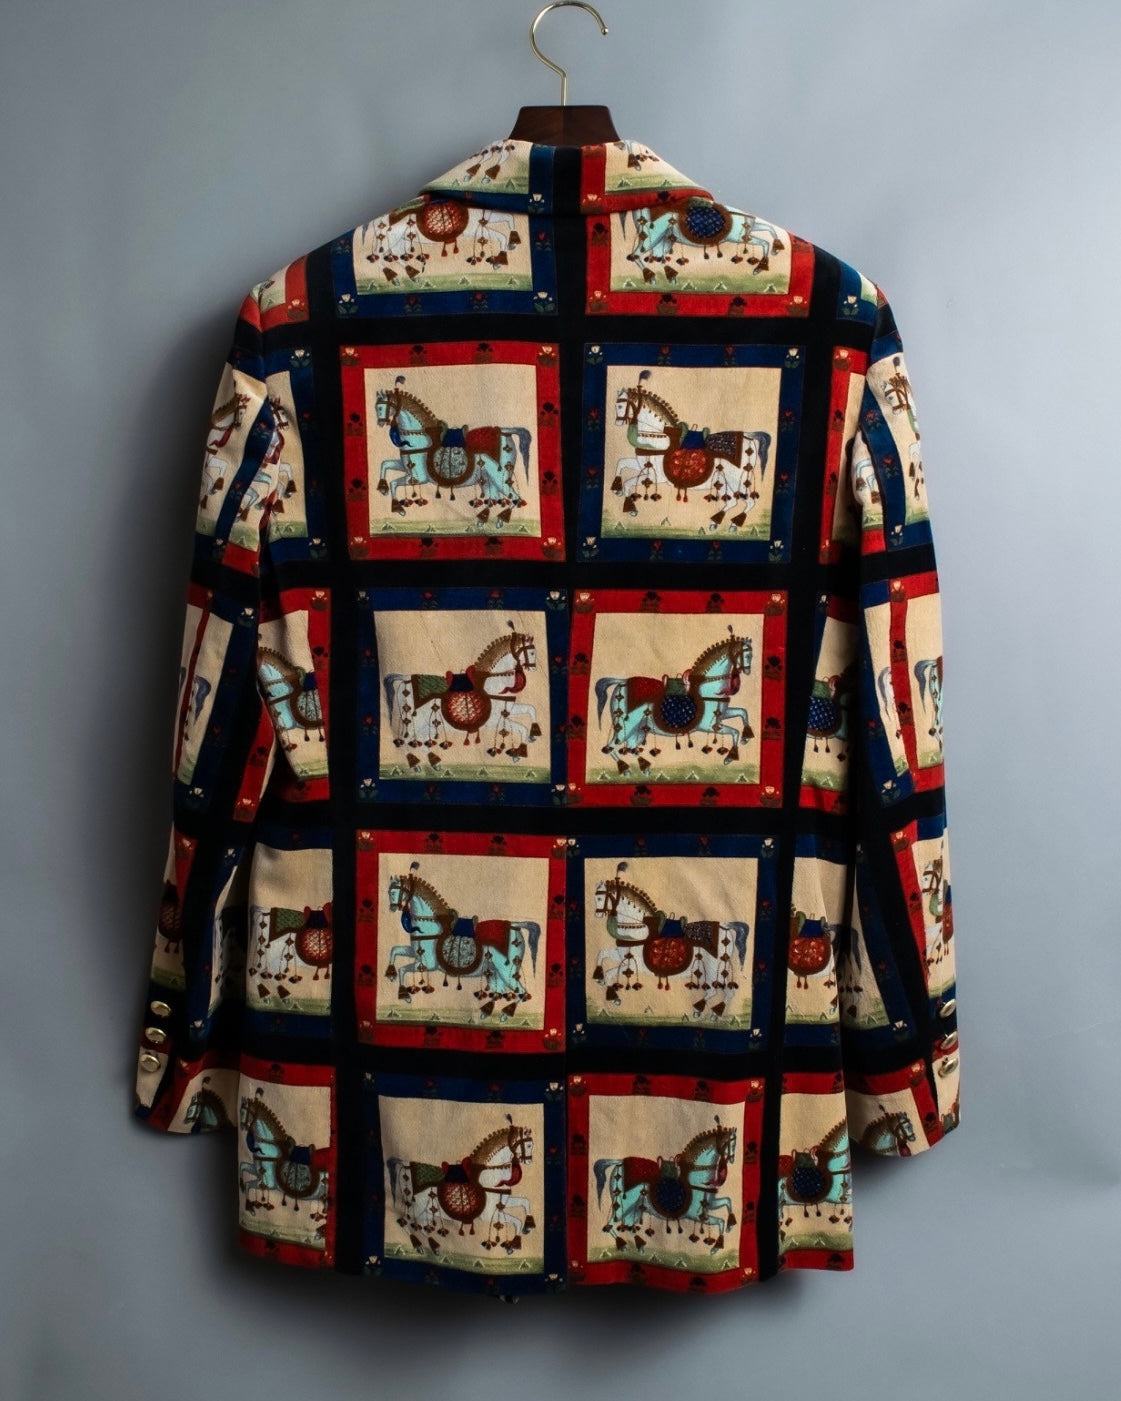 "EMPORIO ARMANI" Total Horse Pattern Four Button Jacket